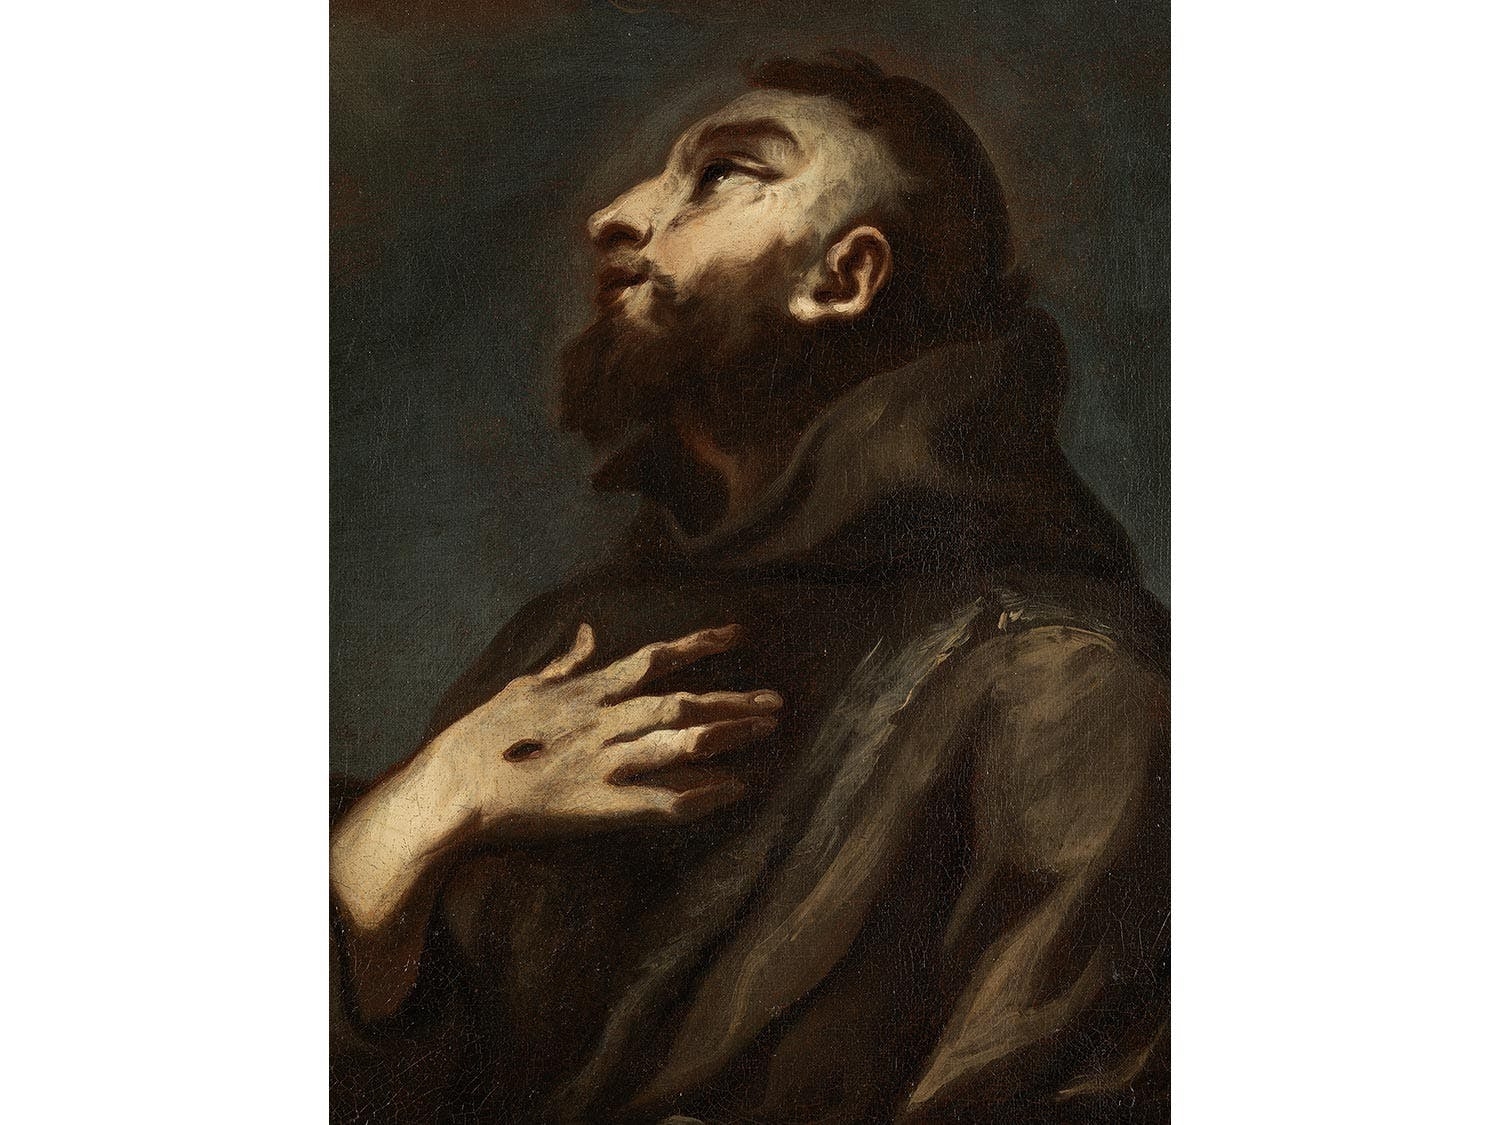 Artwork by Alessandro Magnasco, Der Heilige Franz von Assisi empfängt
die Stigmata, Made of Oil on canvas